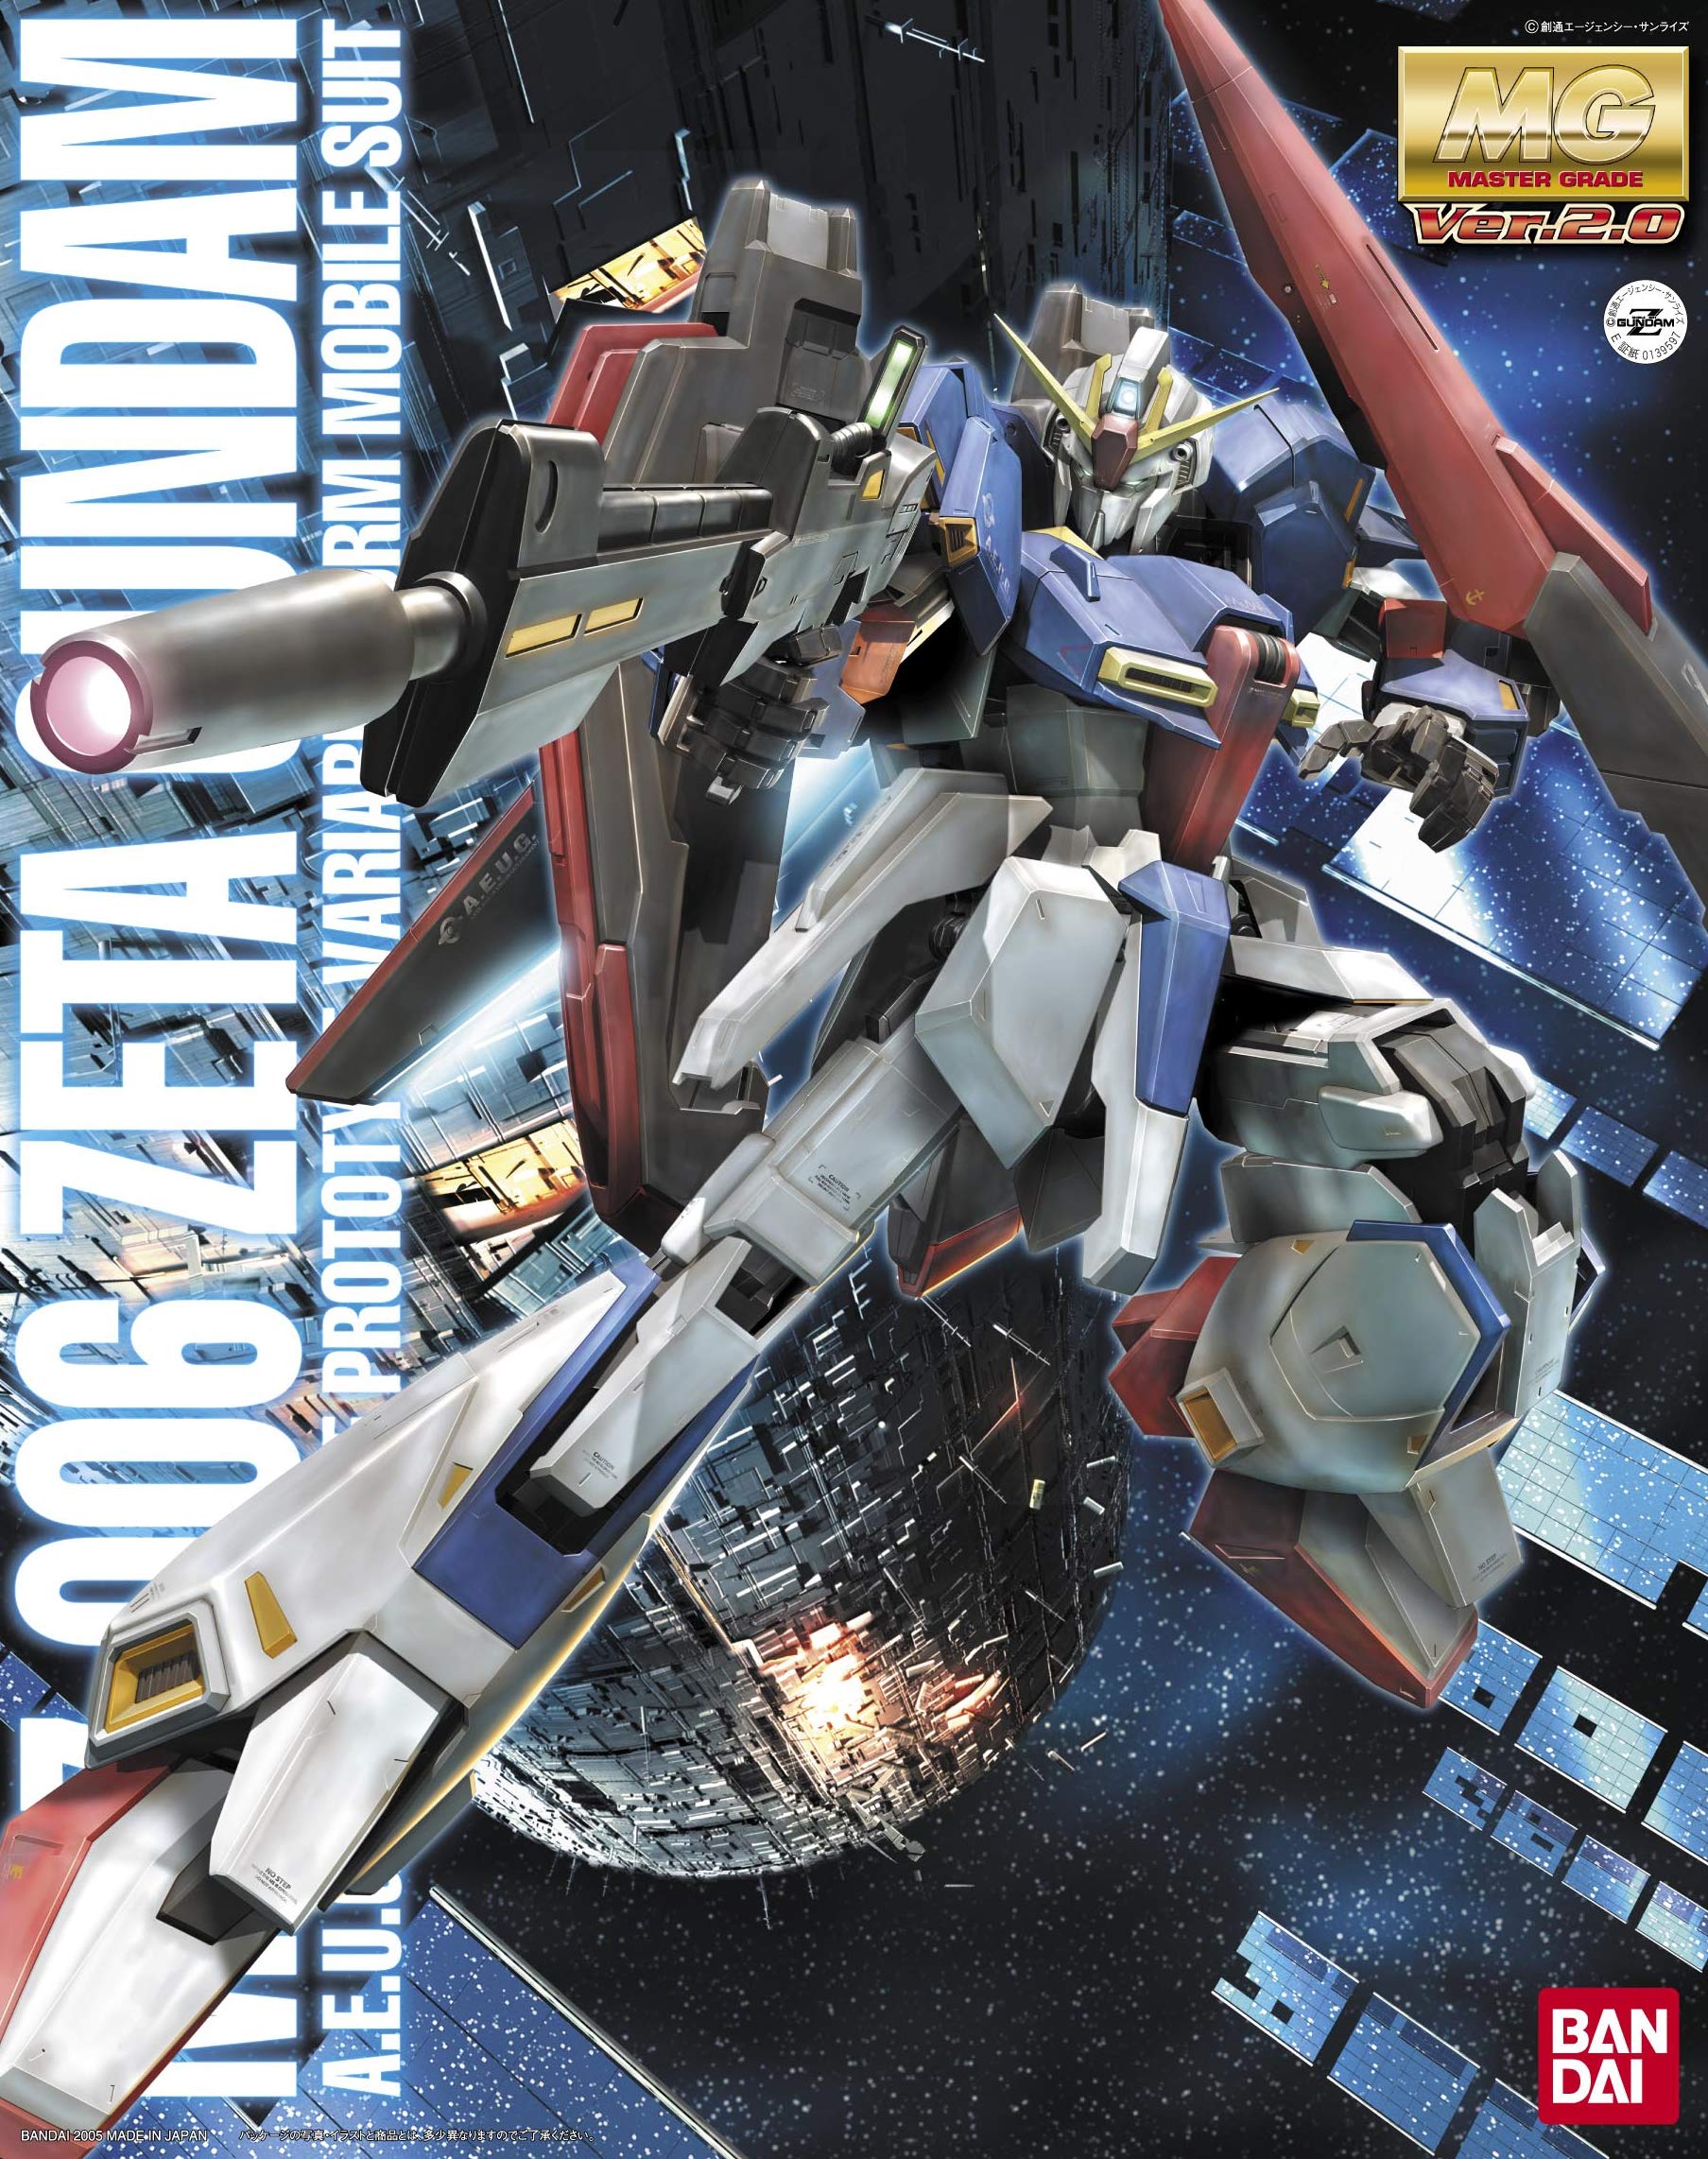 Zeta Gundam (Ver. 2.0) "Z Gundam, Bandai MG 1/100 Model Building Kit